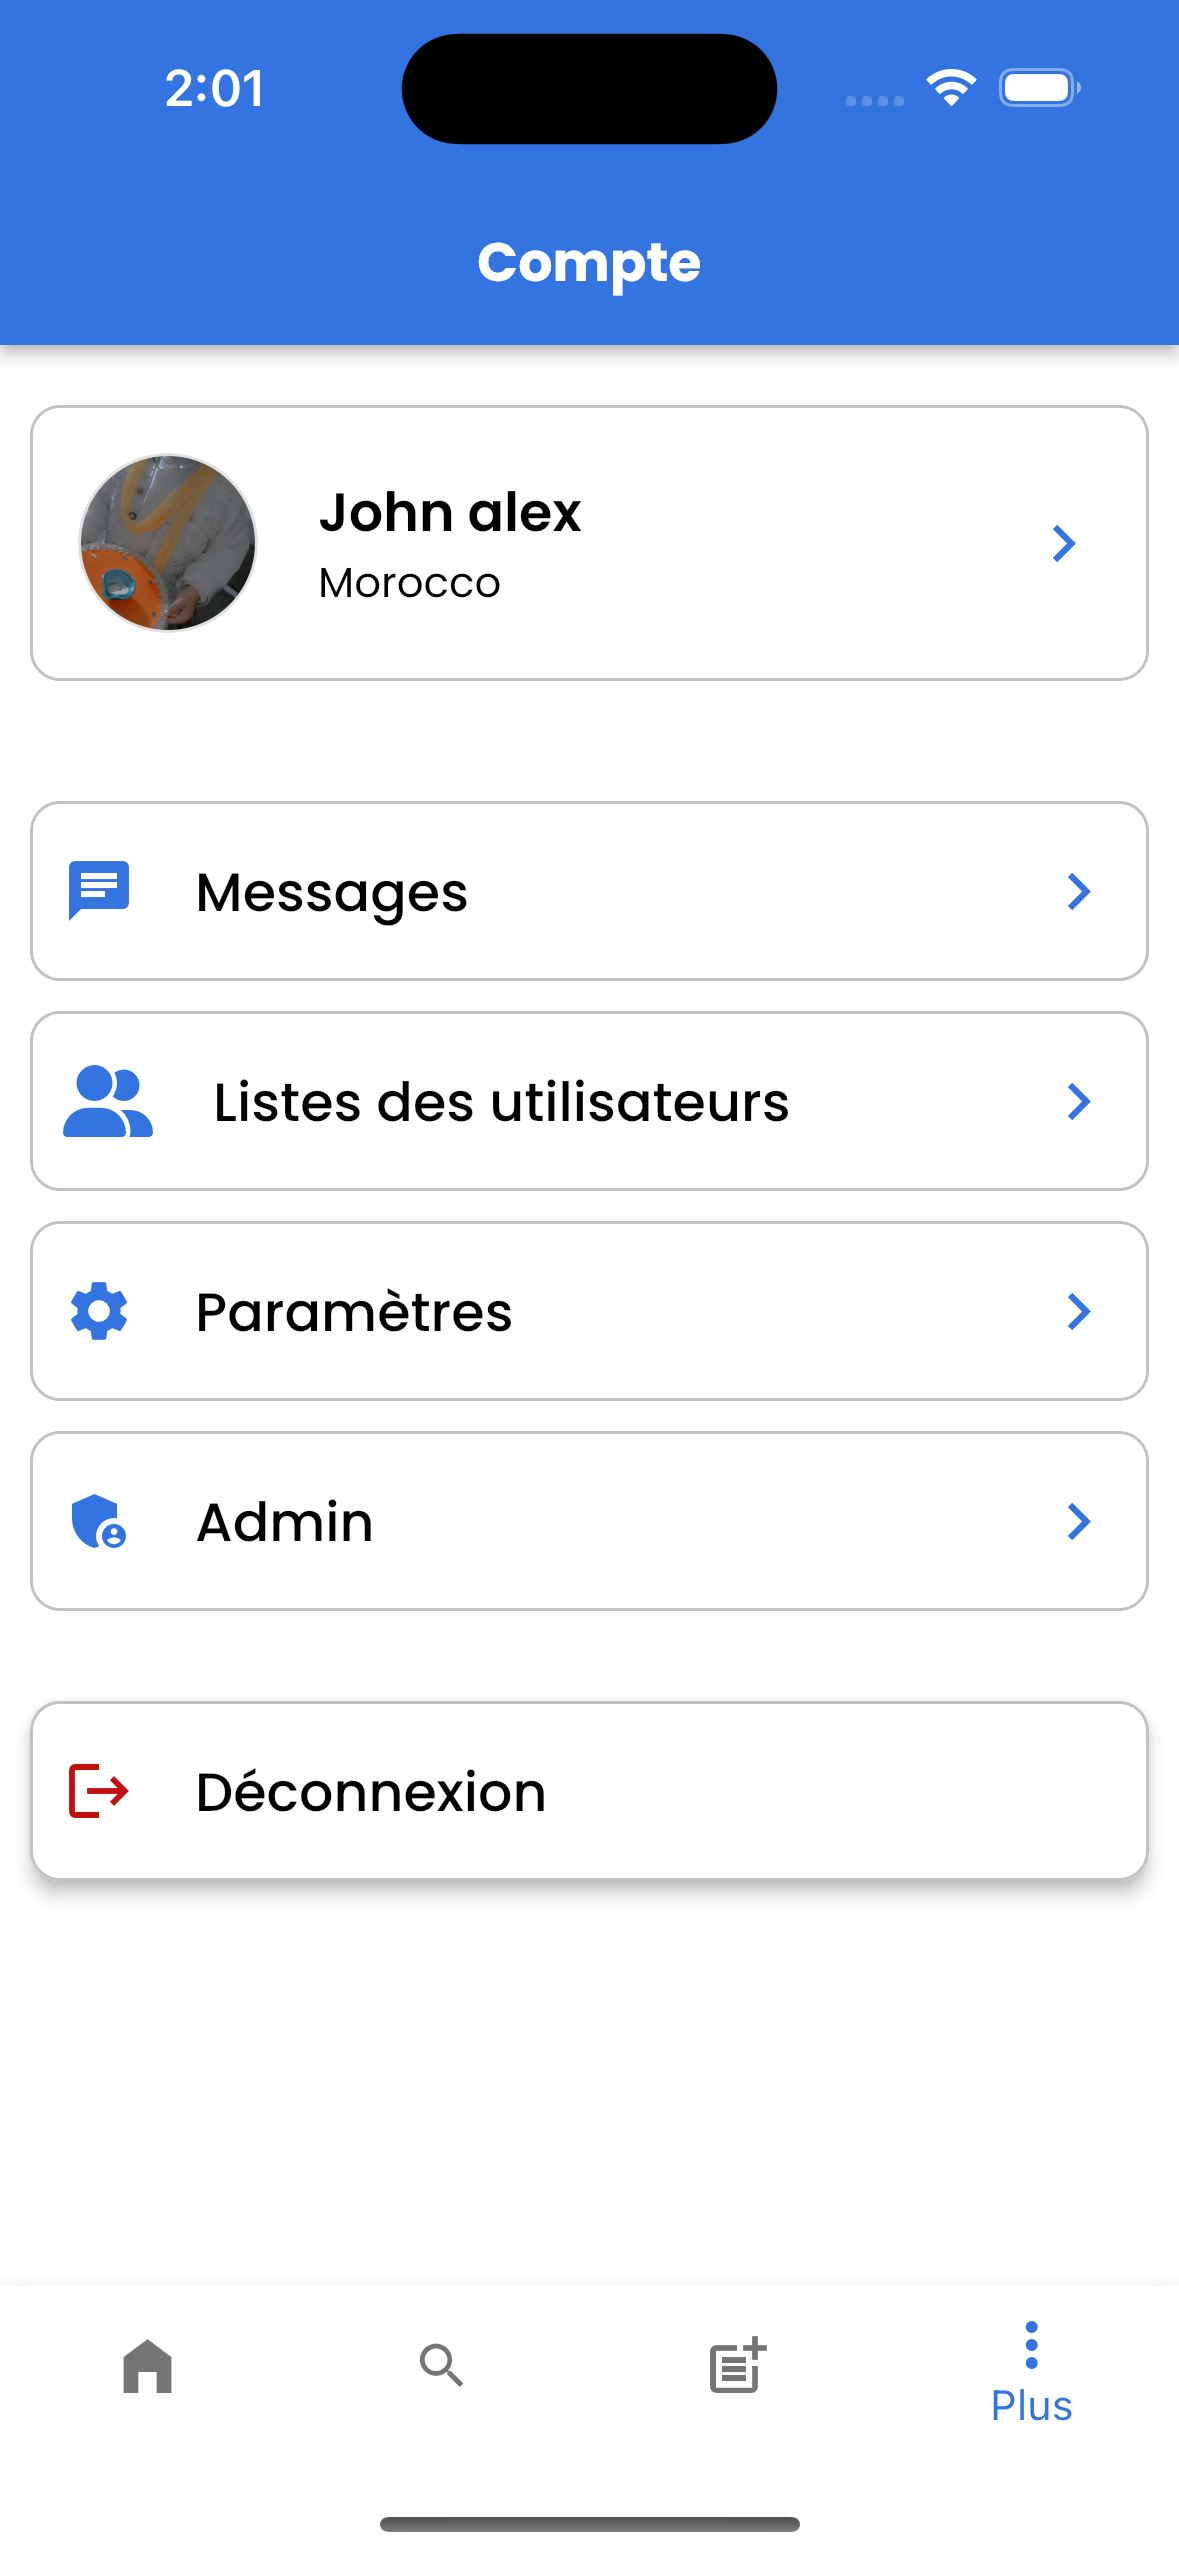 John alex
Morocco
HF Messages
®> . ogo
a» Listes des utilisateurs

tr Parameétres

® Admin

[> Déconnexion